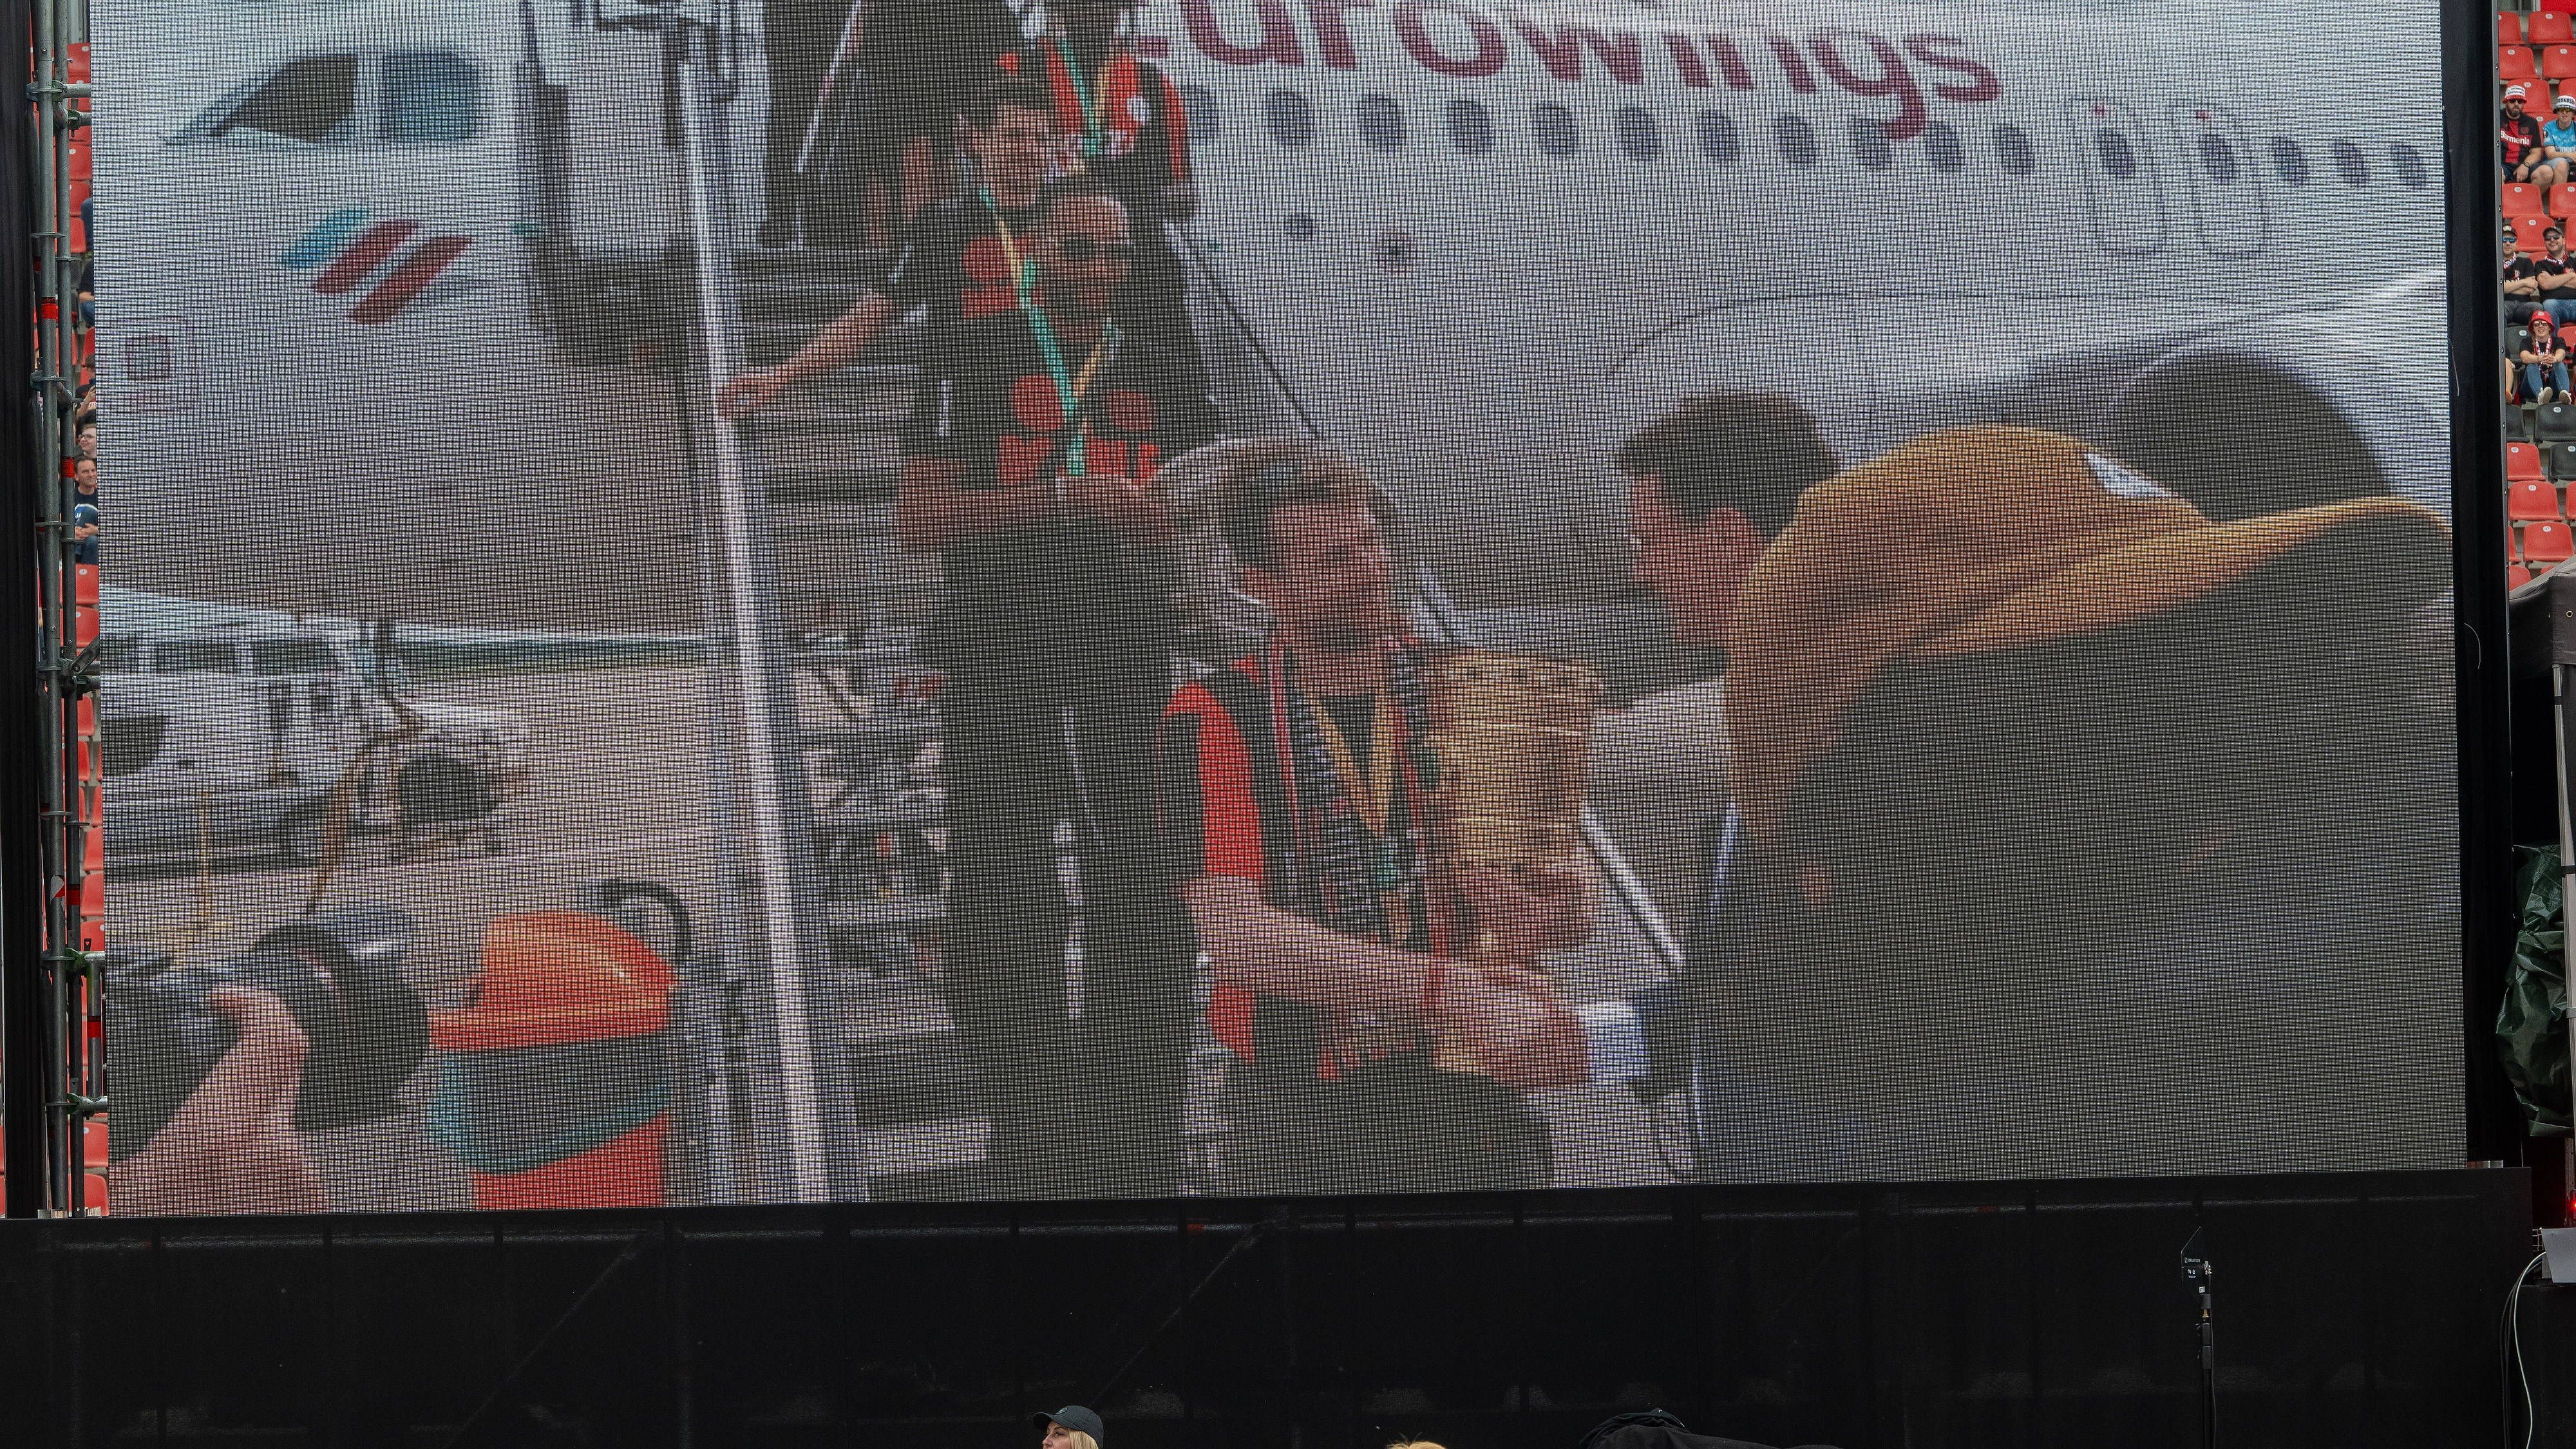 <strong>Bayer Leverkusen feiert den Double-Gewinn</strong><br>Der Double-Sieger ist gelandet! Am Flughafen Köln/Bonn startete die große Meisterfeier. Hendrik Wüst, Ministerpräsident des Landes Nordrhein-Westfalen, empfing die Bayer-Stars. All das war auf einer Leinwand in der BayArena zu sehen.